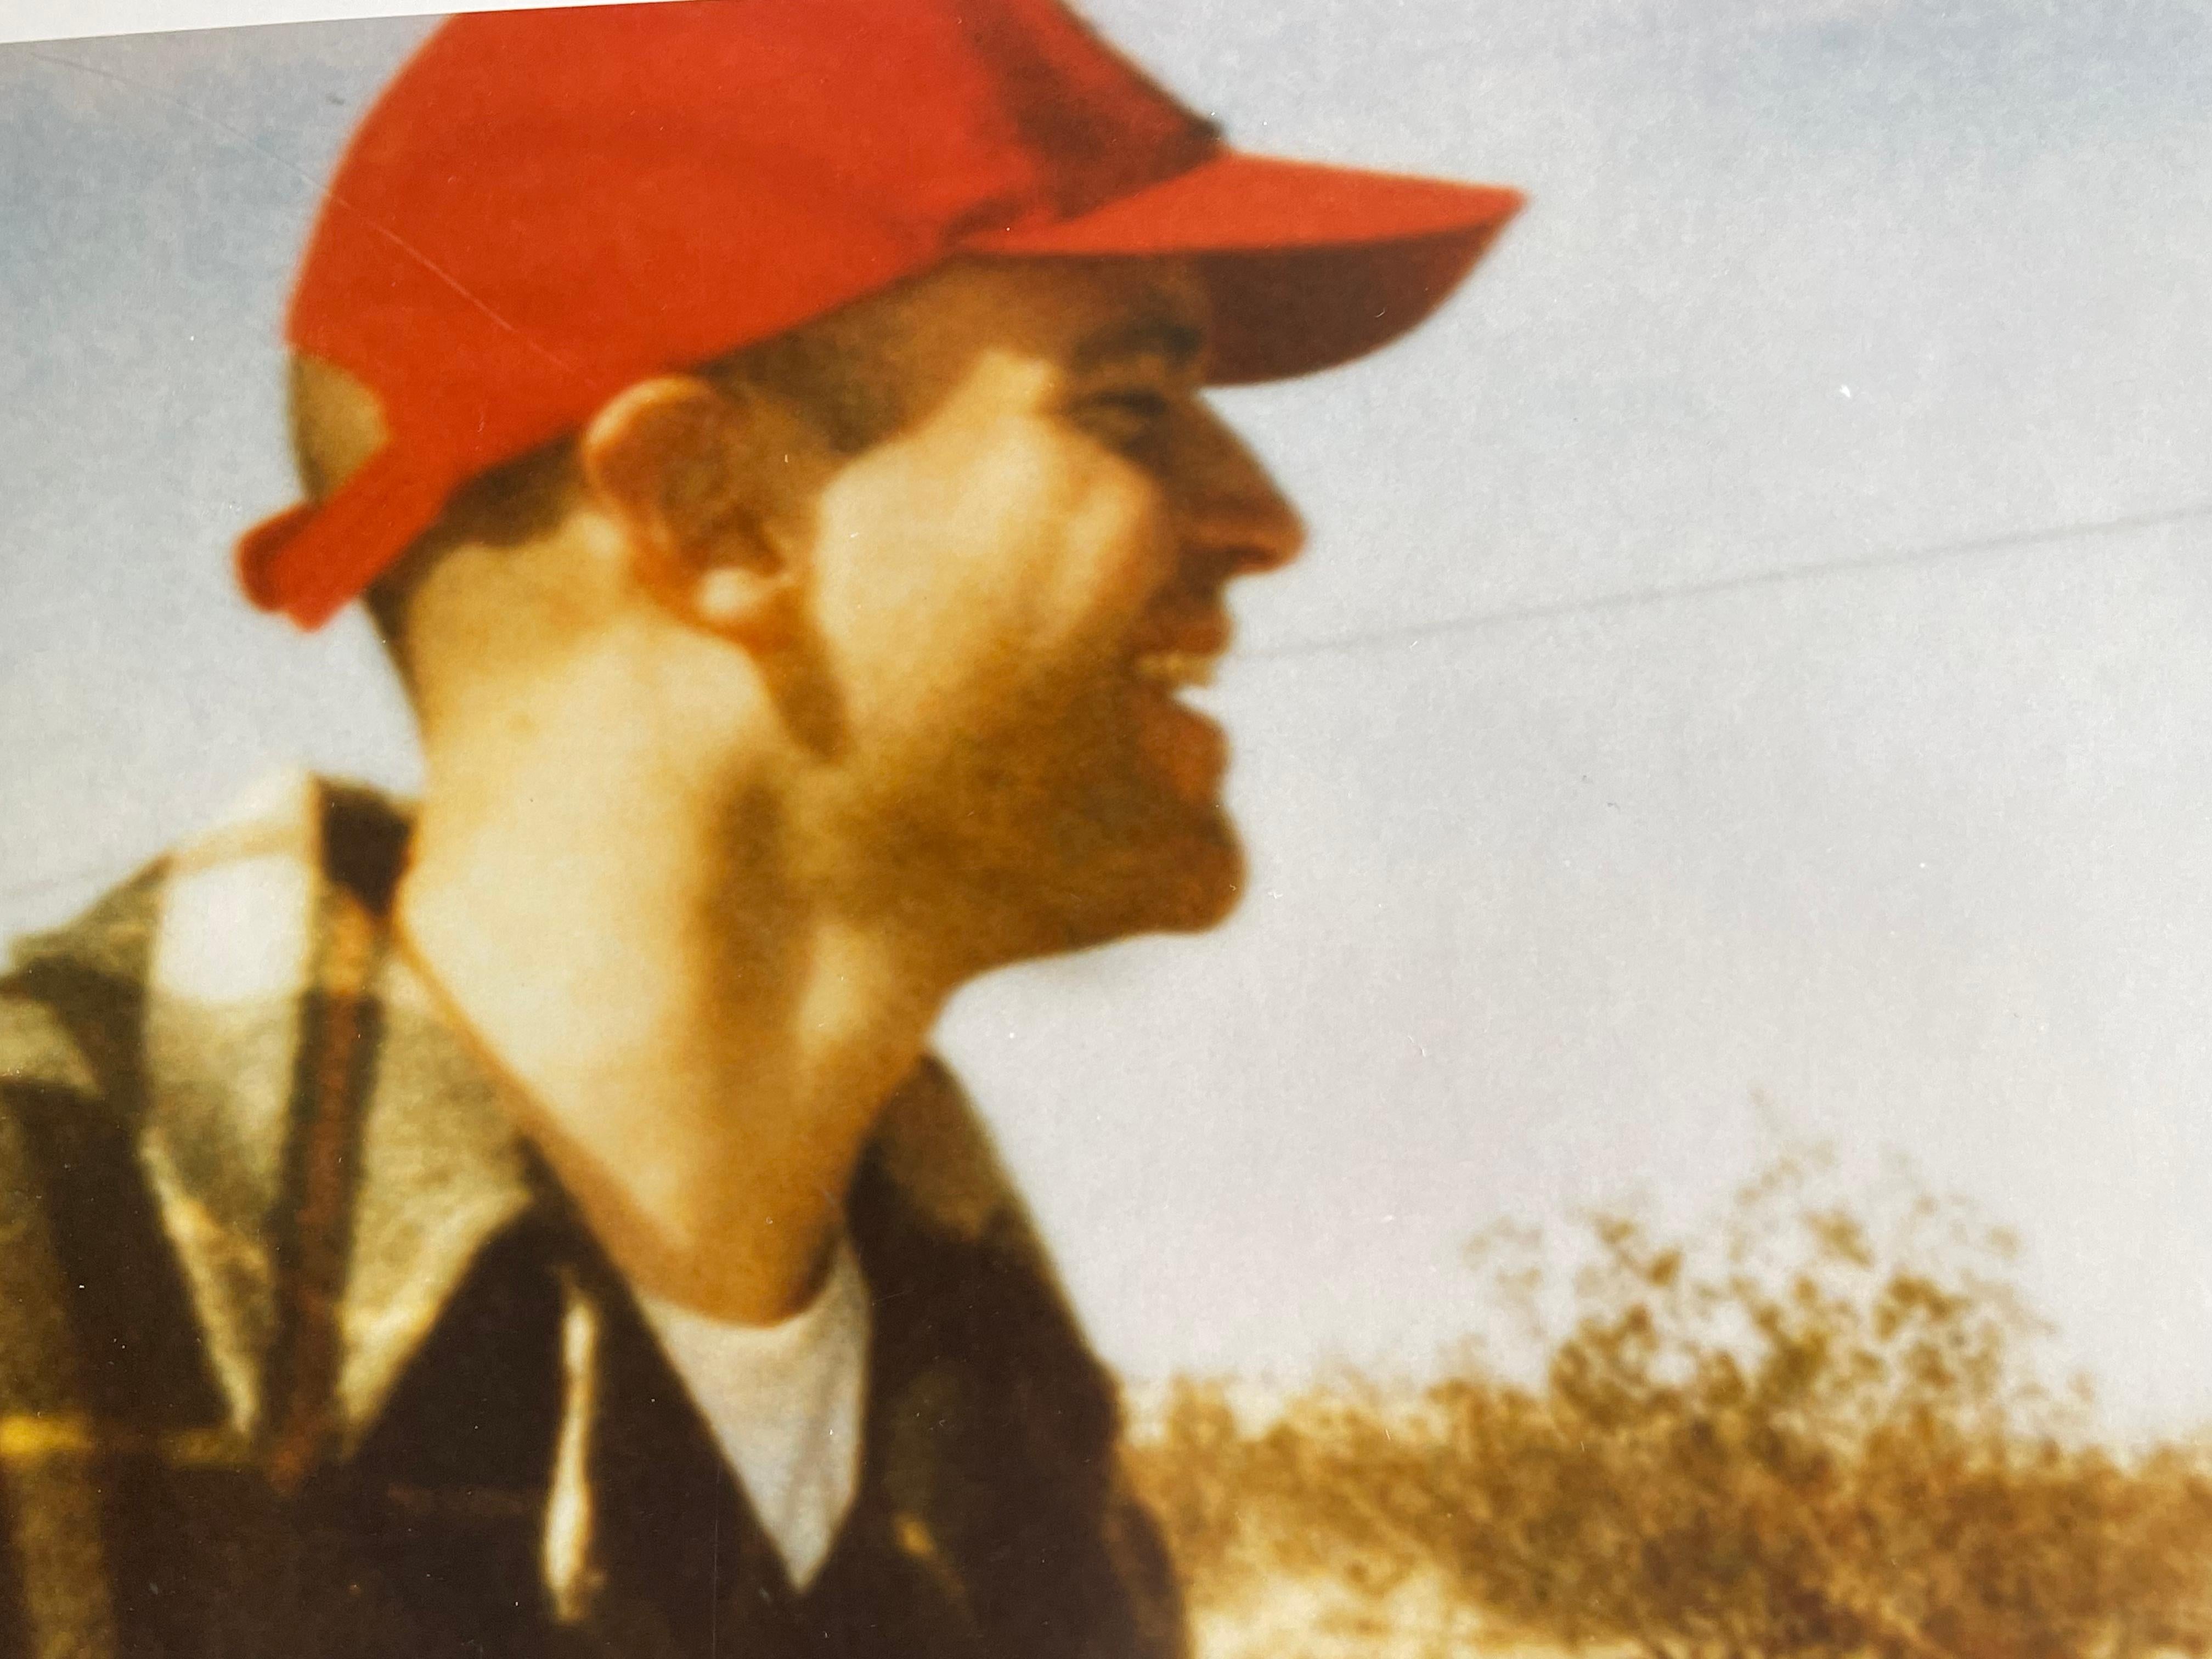 Tripping (Stranger than Paradise) -
mit Marc Forster und Greg Lauren - 1997 - 29 Palms, CA

Auflage 3/5, 
44x59cm.  
Analoger C-Print, gedruckt von der Künstlerin, basierend auf dem Polaroid. 
Unterschriftenlabel und Zertifikat. 
Künstler-Inventar